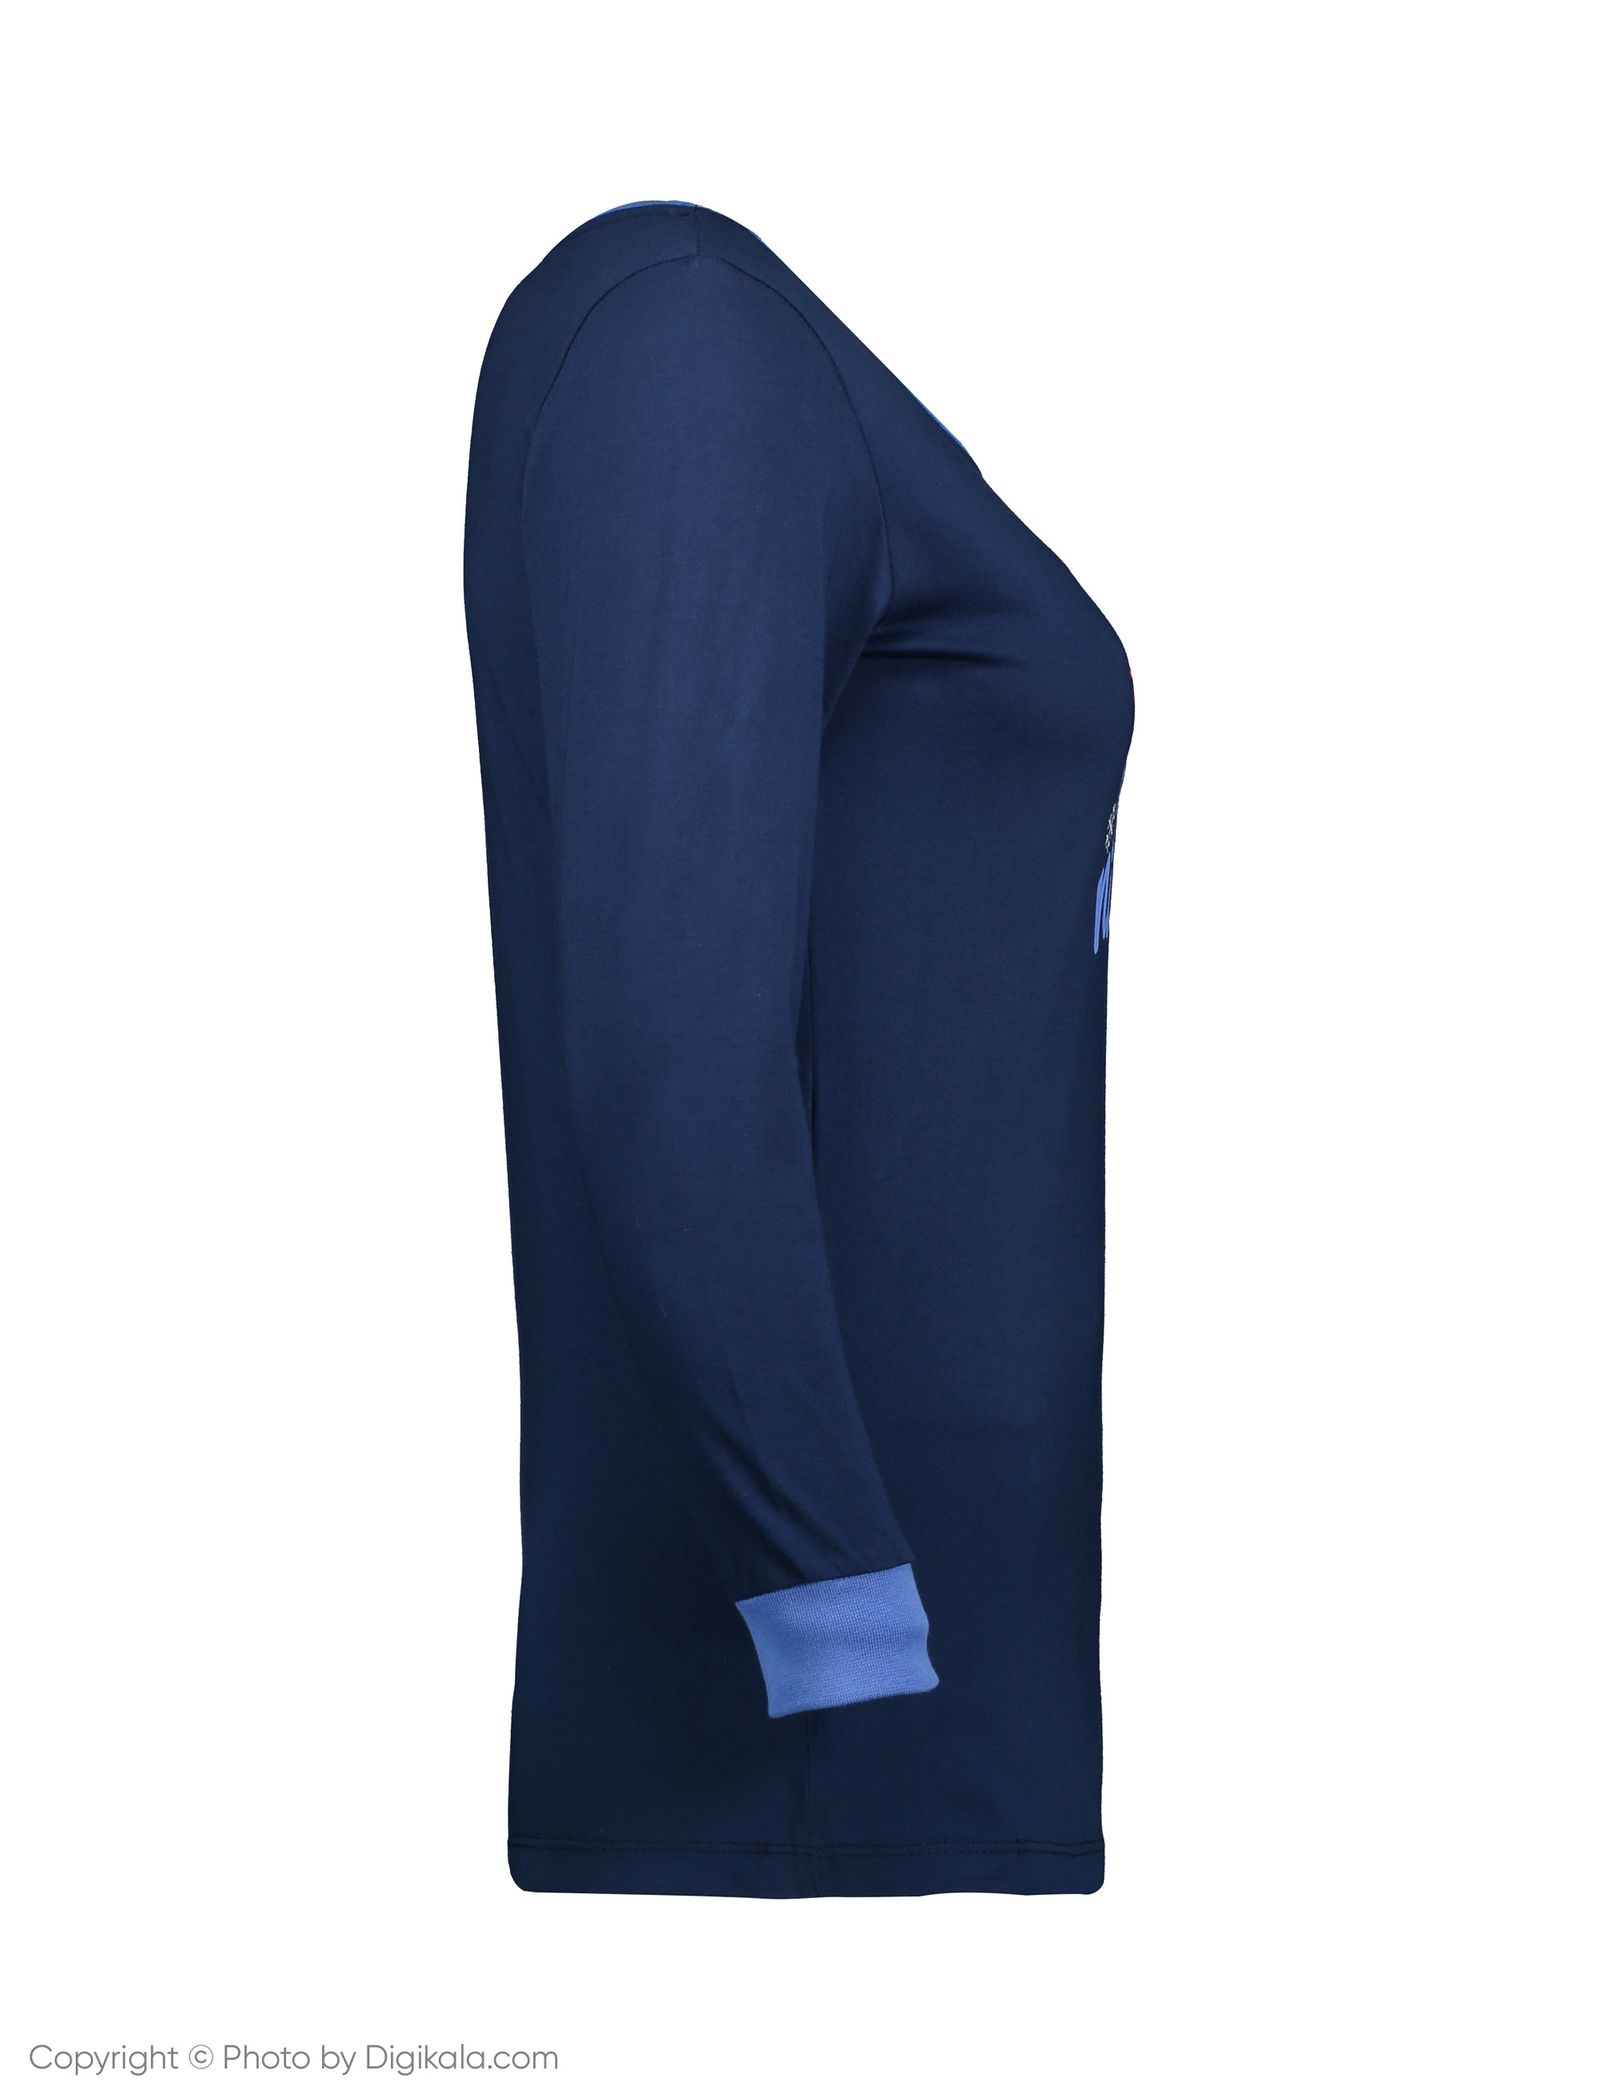 ست تی شرت و شلوار راحتی زنانه ناربن مدل 1521167-56 - سورمه ای - 4